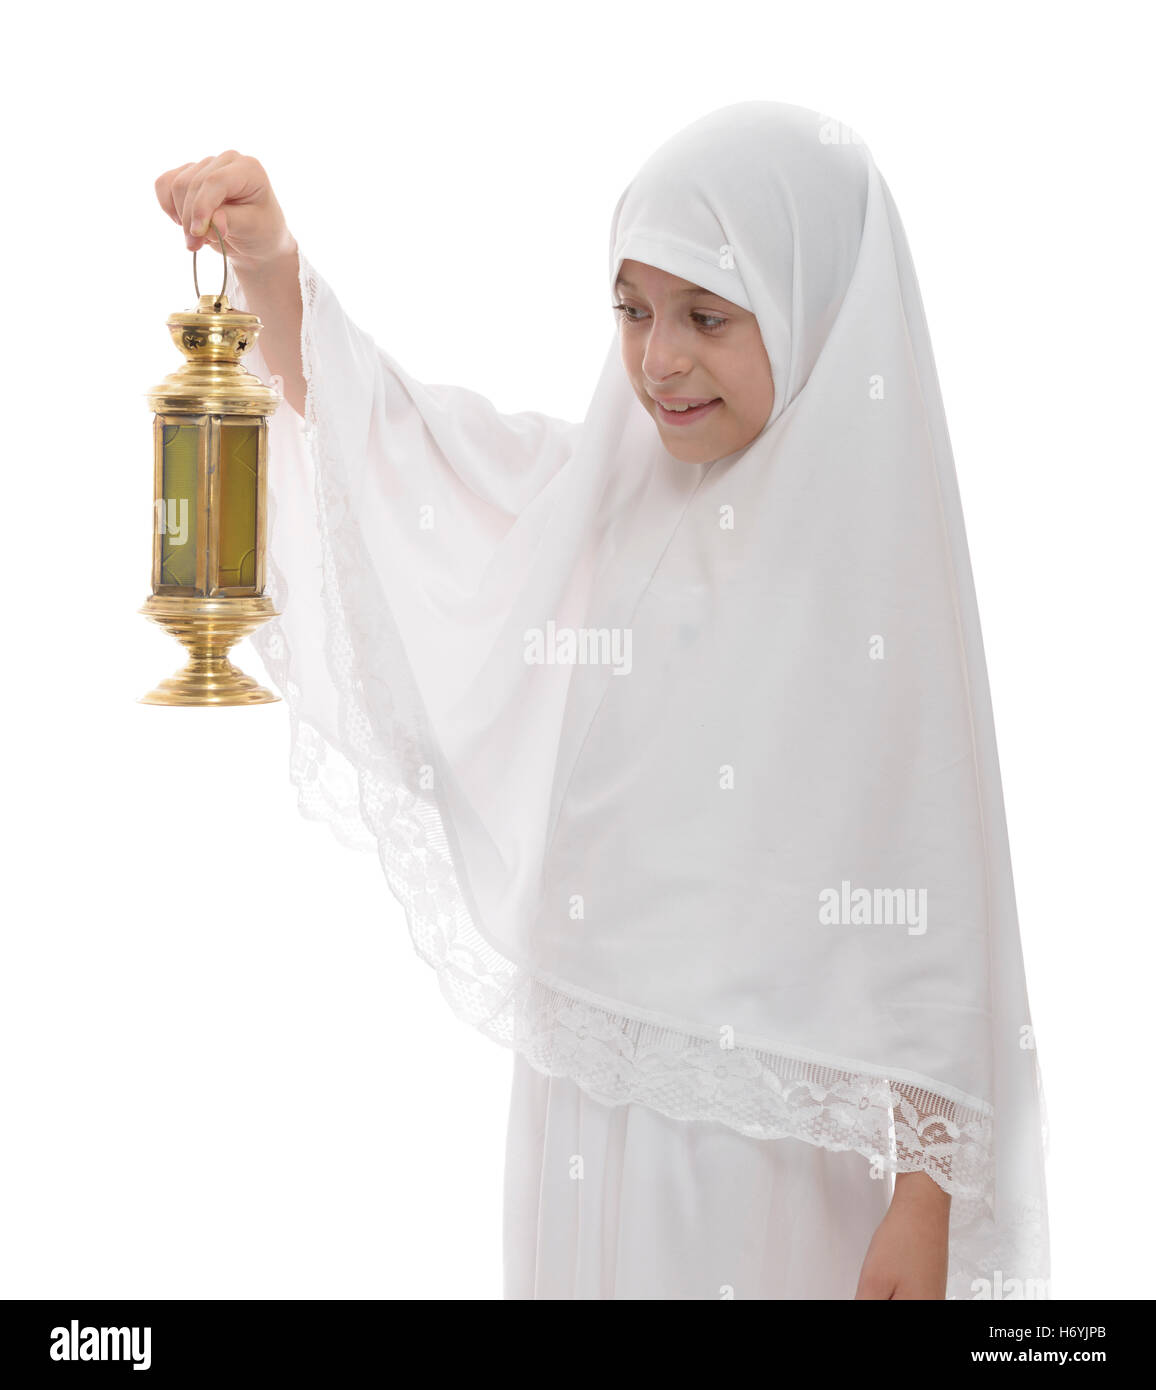 Heureux jeune musulmane célébrant avec lanterne de fête Ramadan isolé sur fond blanc Banque D'Images